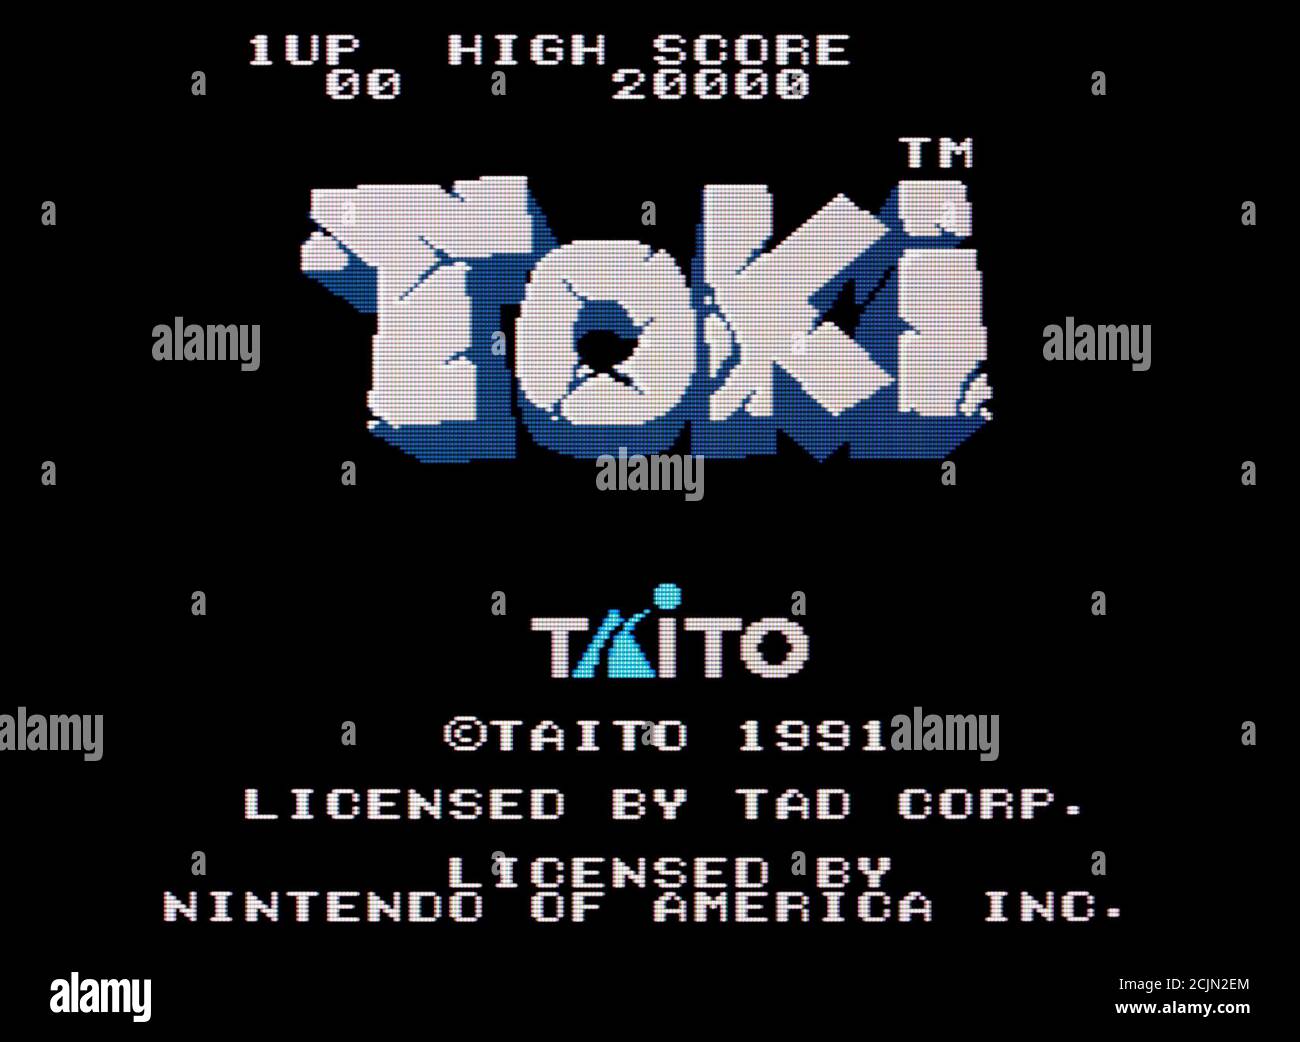 Toki - Nintendo Entertainment System - NES Videogame - Editorial use only Stock Photo